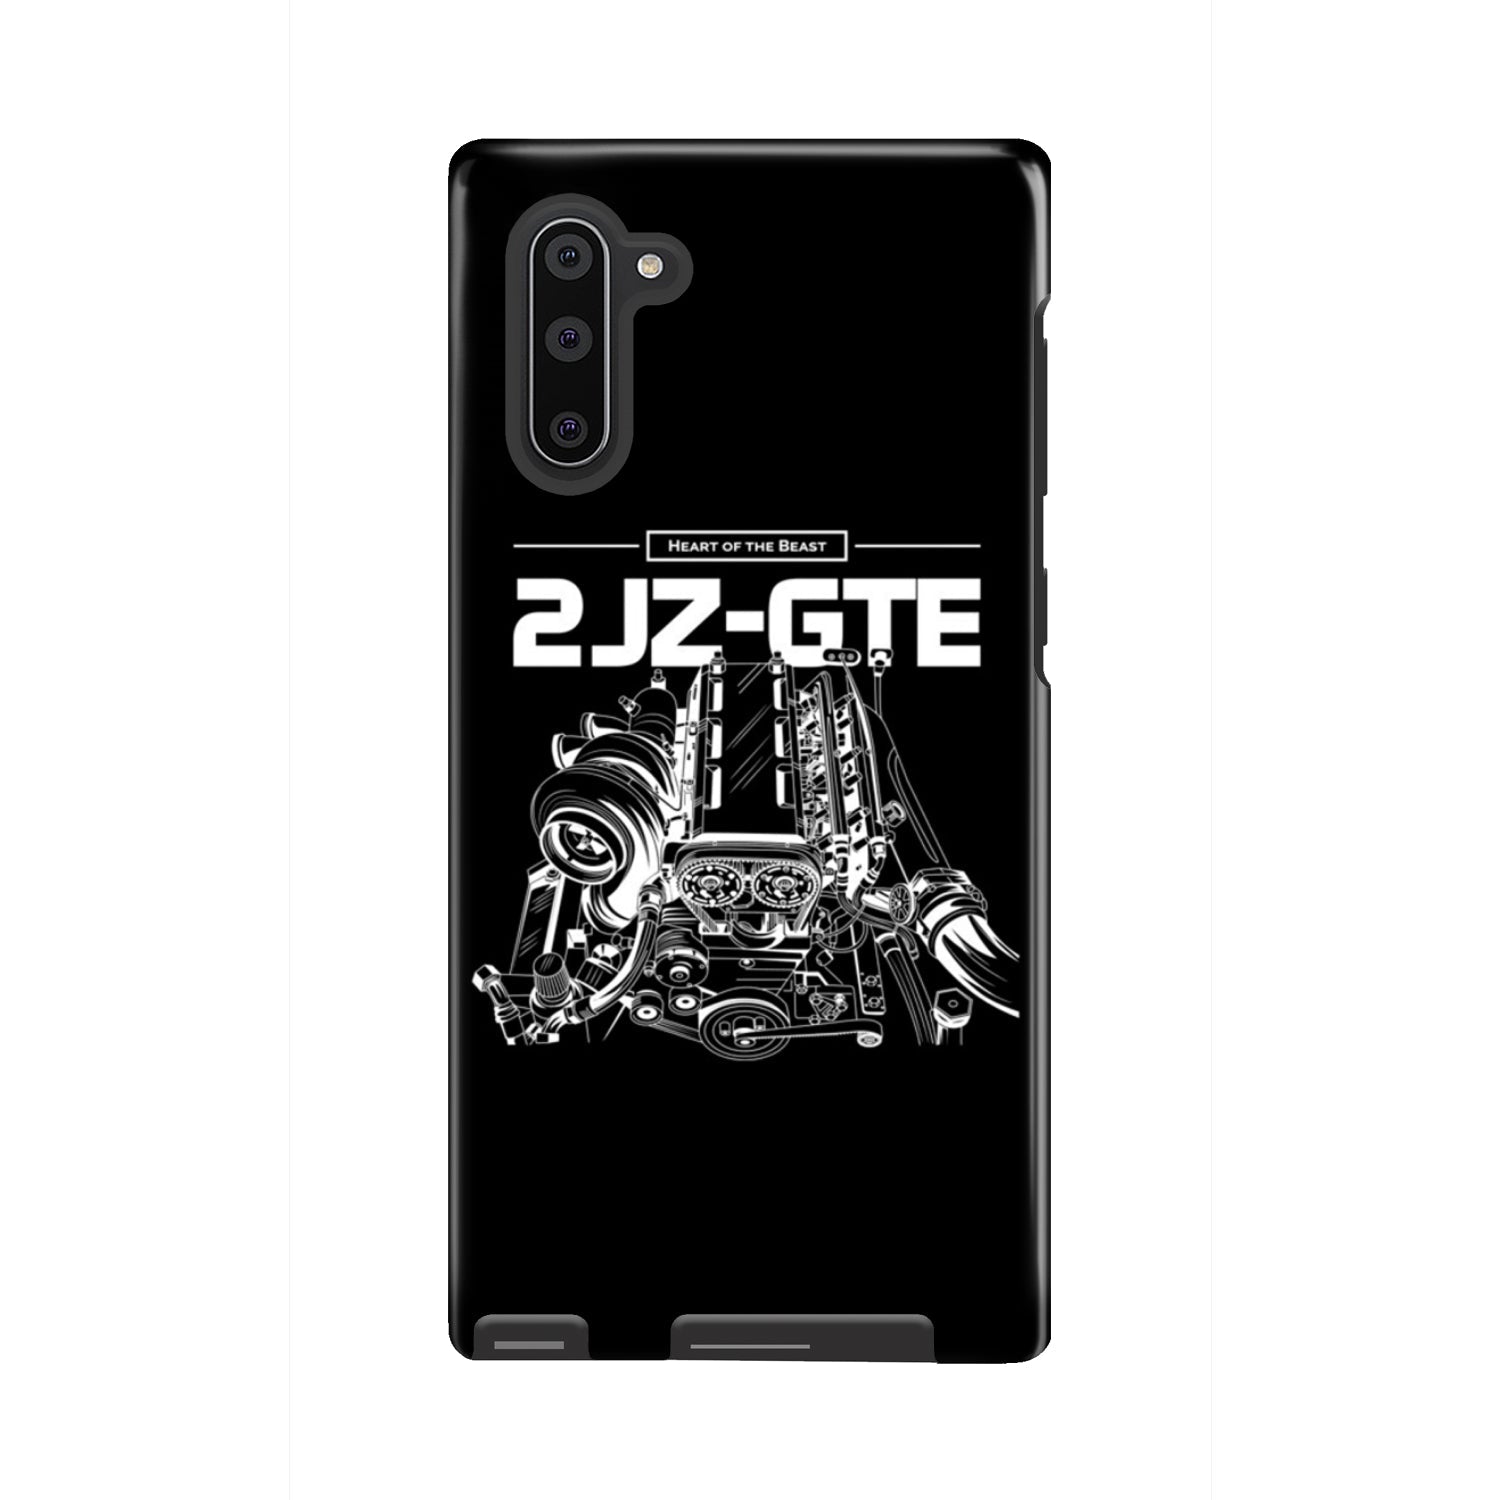 2jz GTE Phone Case